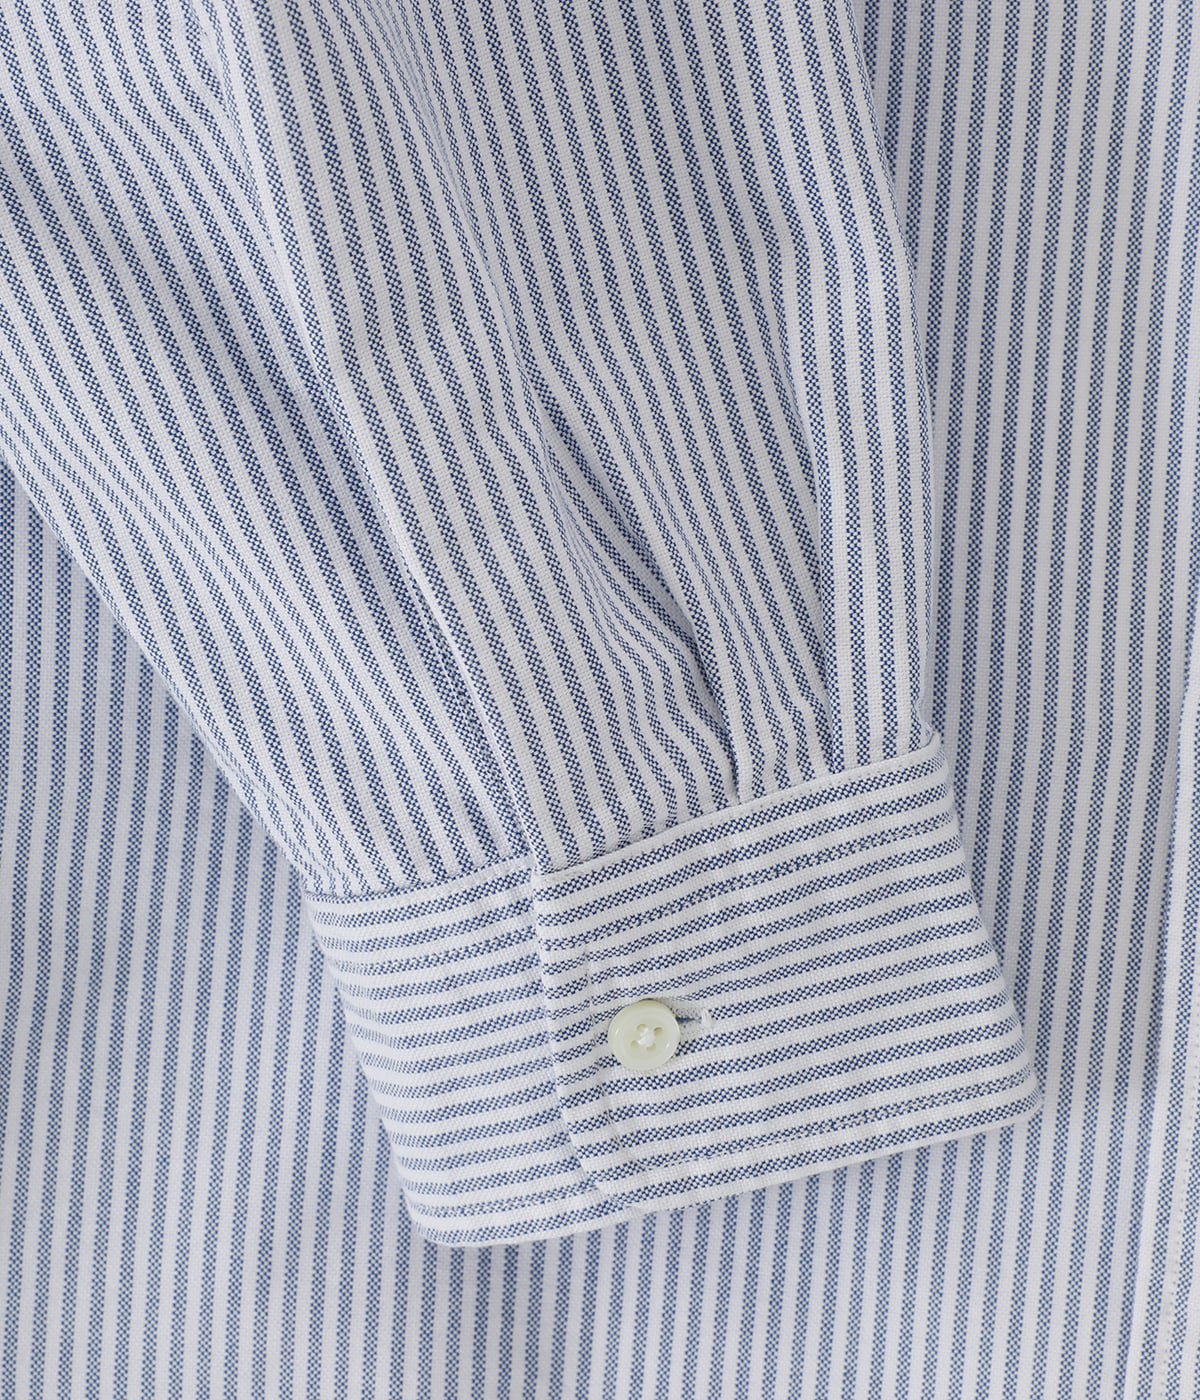 Cotton Polyester Stripe OX B.D. Shirt